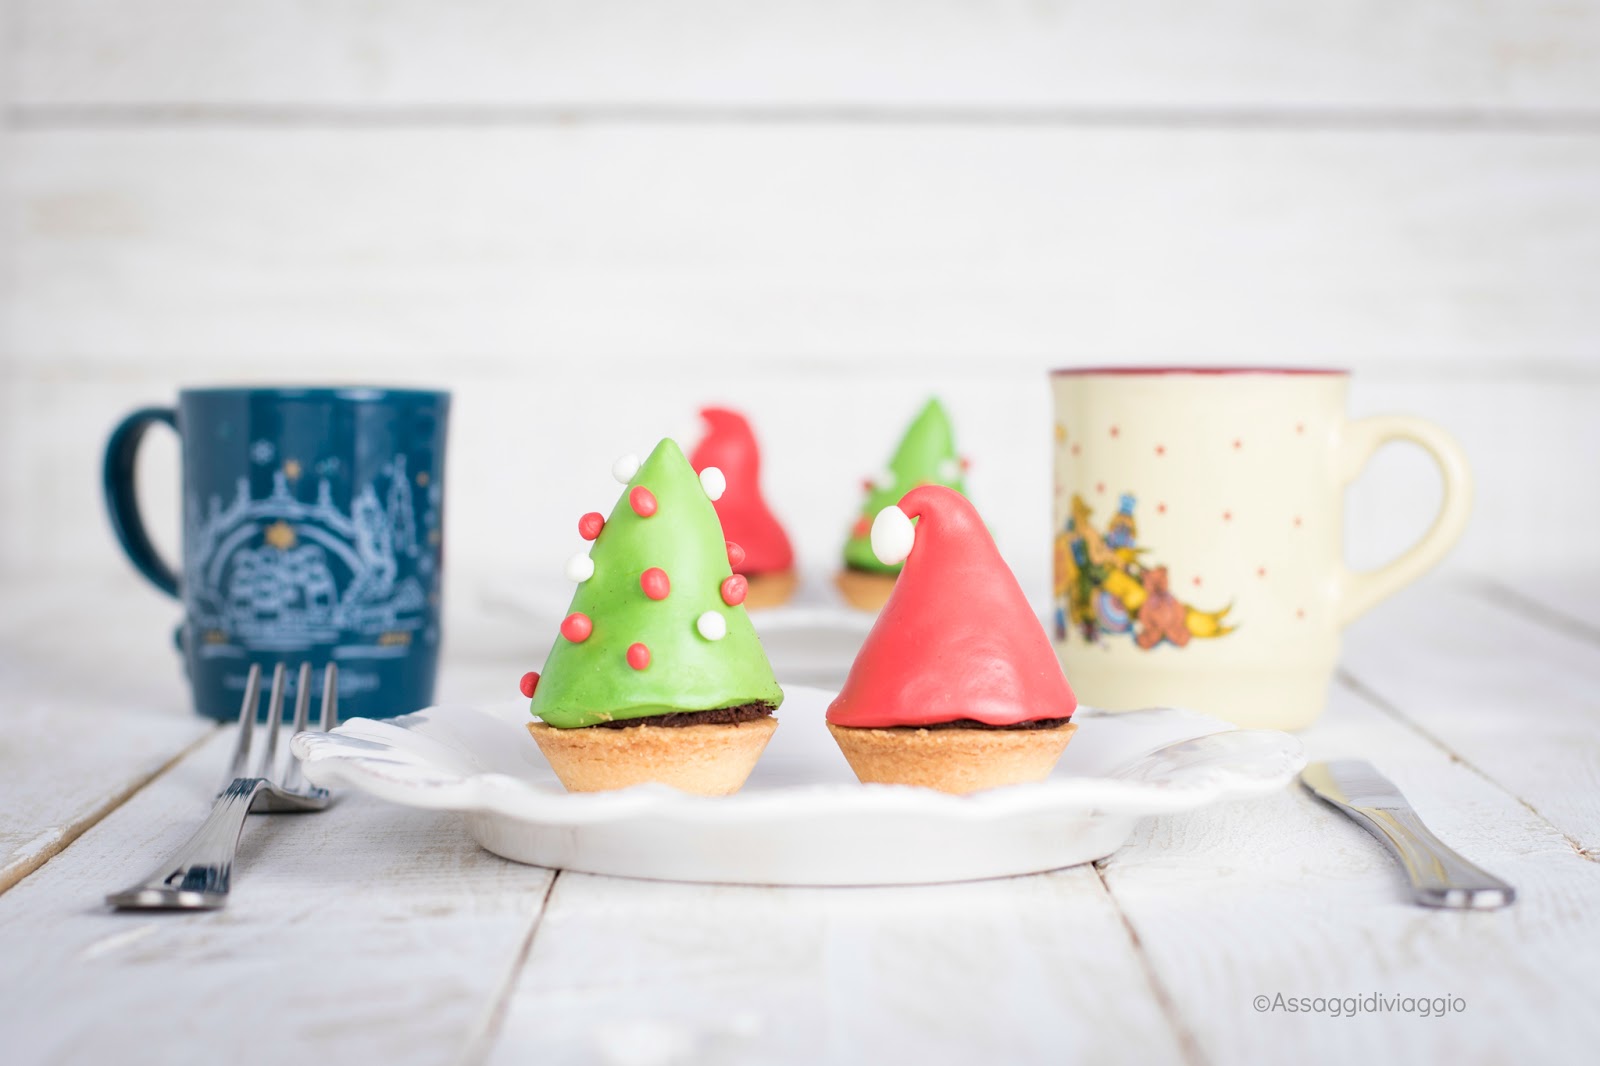 Segnaposto Natalizi Con Pasta Di Zucchero.Per La Tavola Di Natale I Segnaposto Commestibili Assaggi Di Viaggio